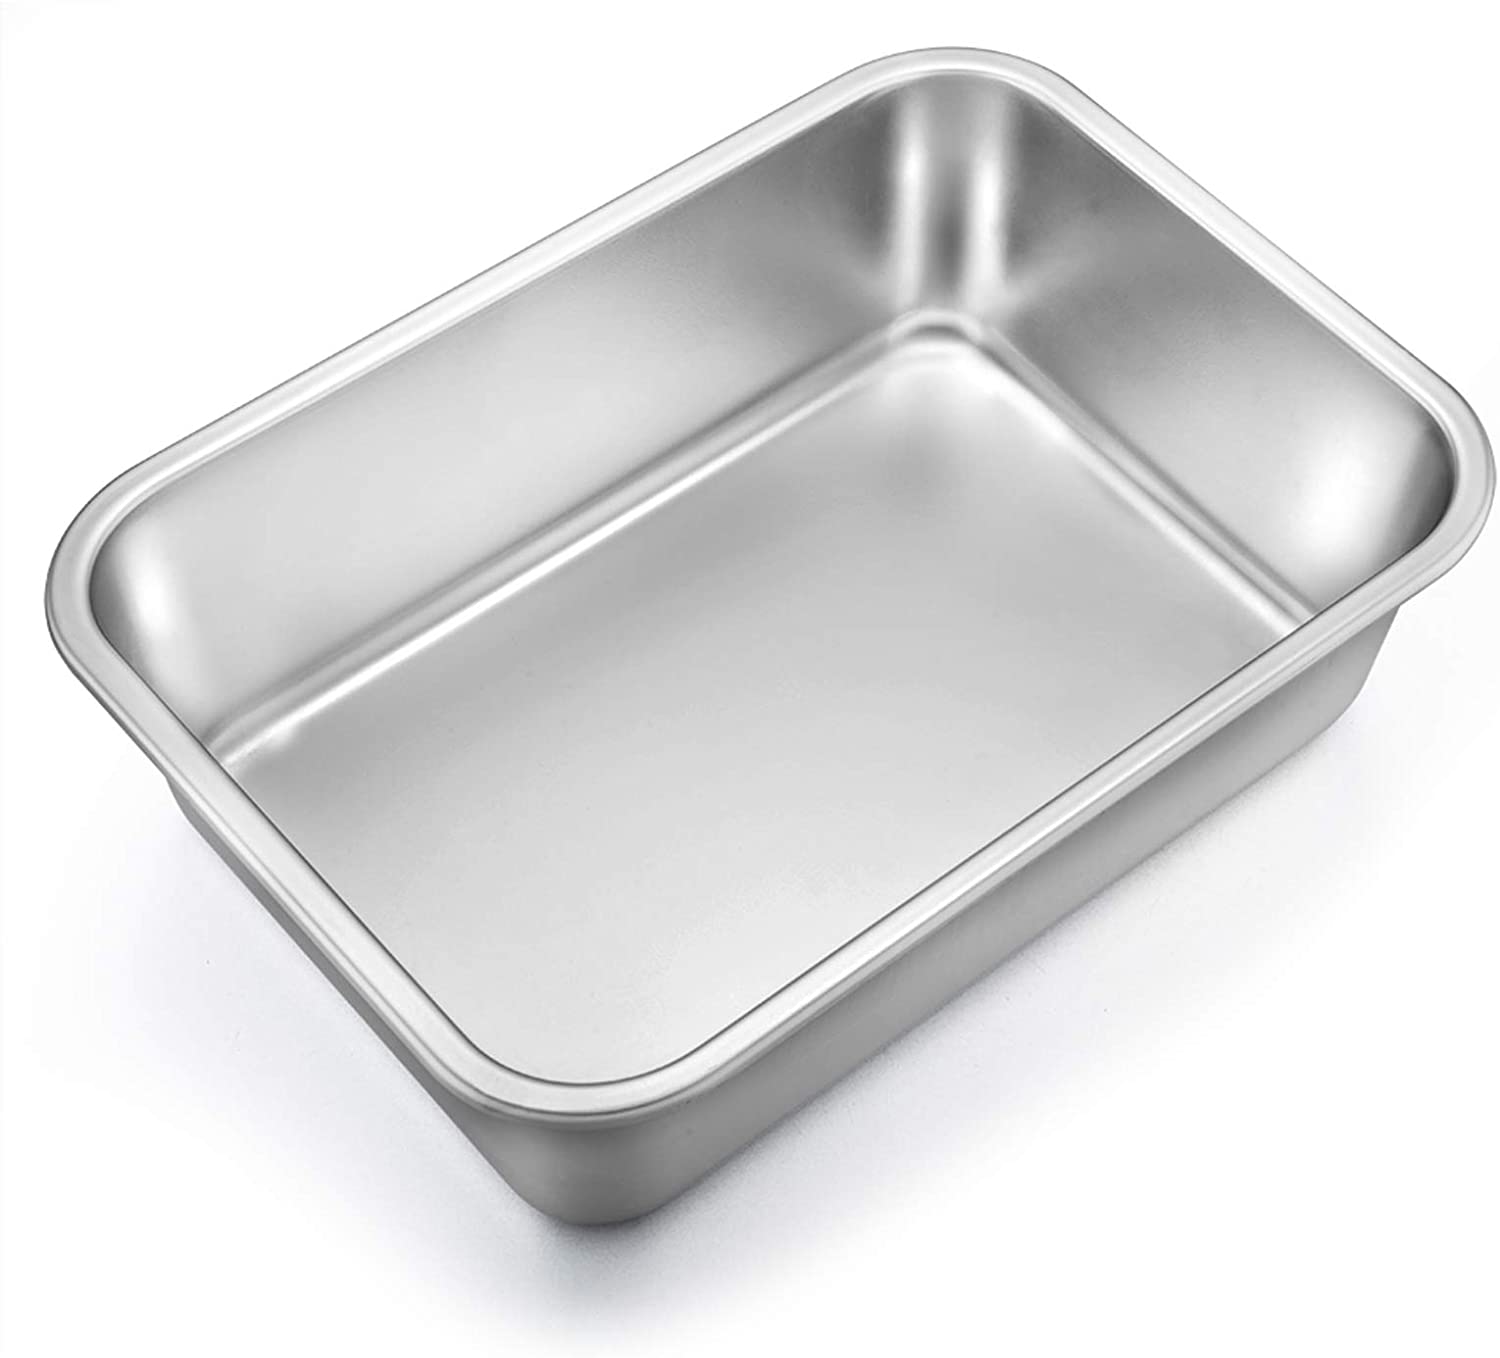 TeamFar Dishwasher Safe Stainless Steel Lasagna Pan